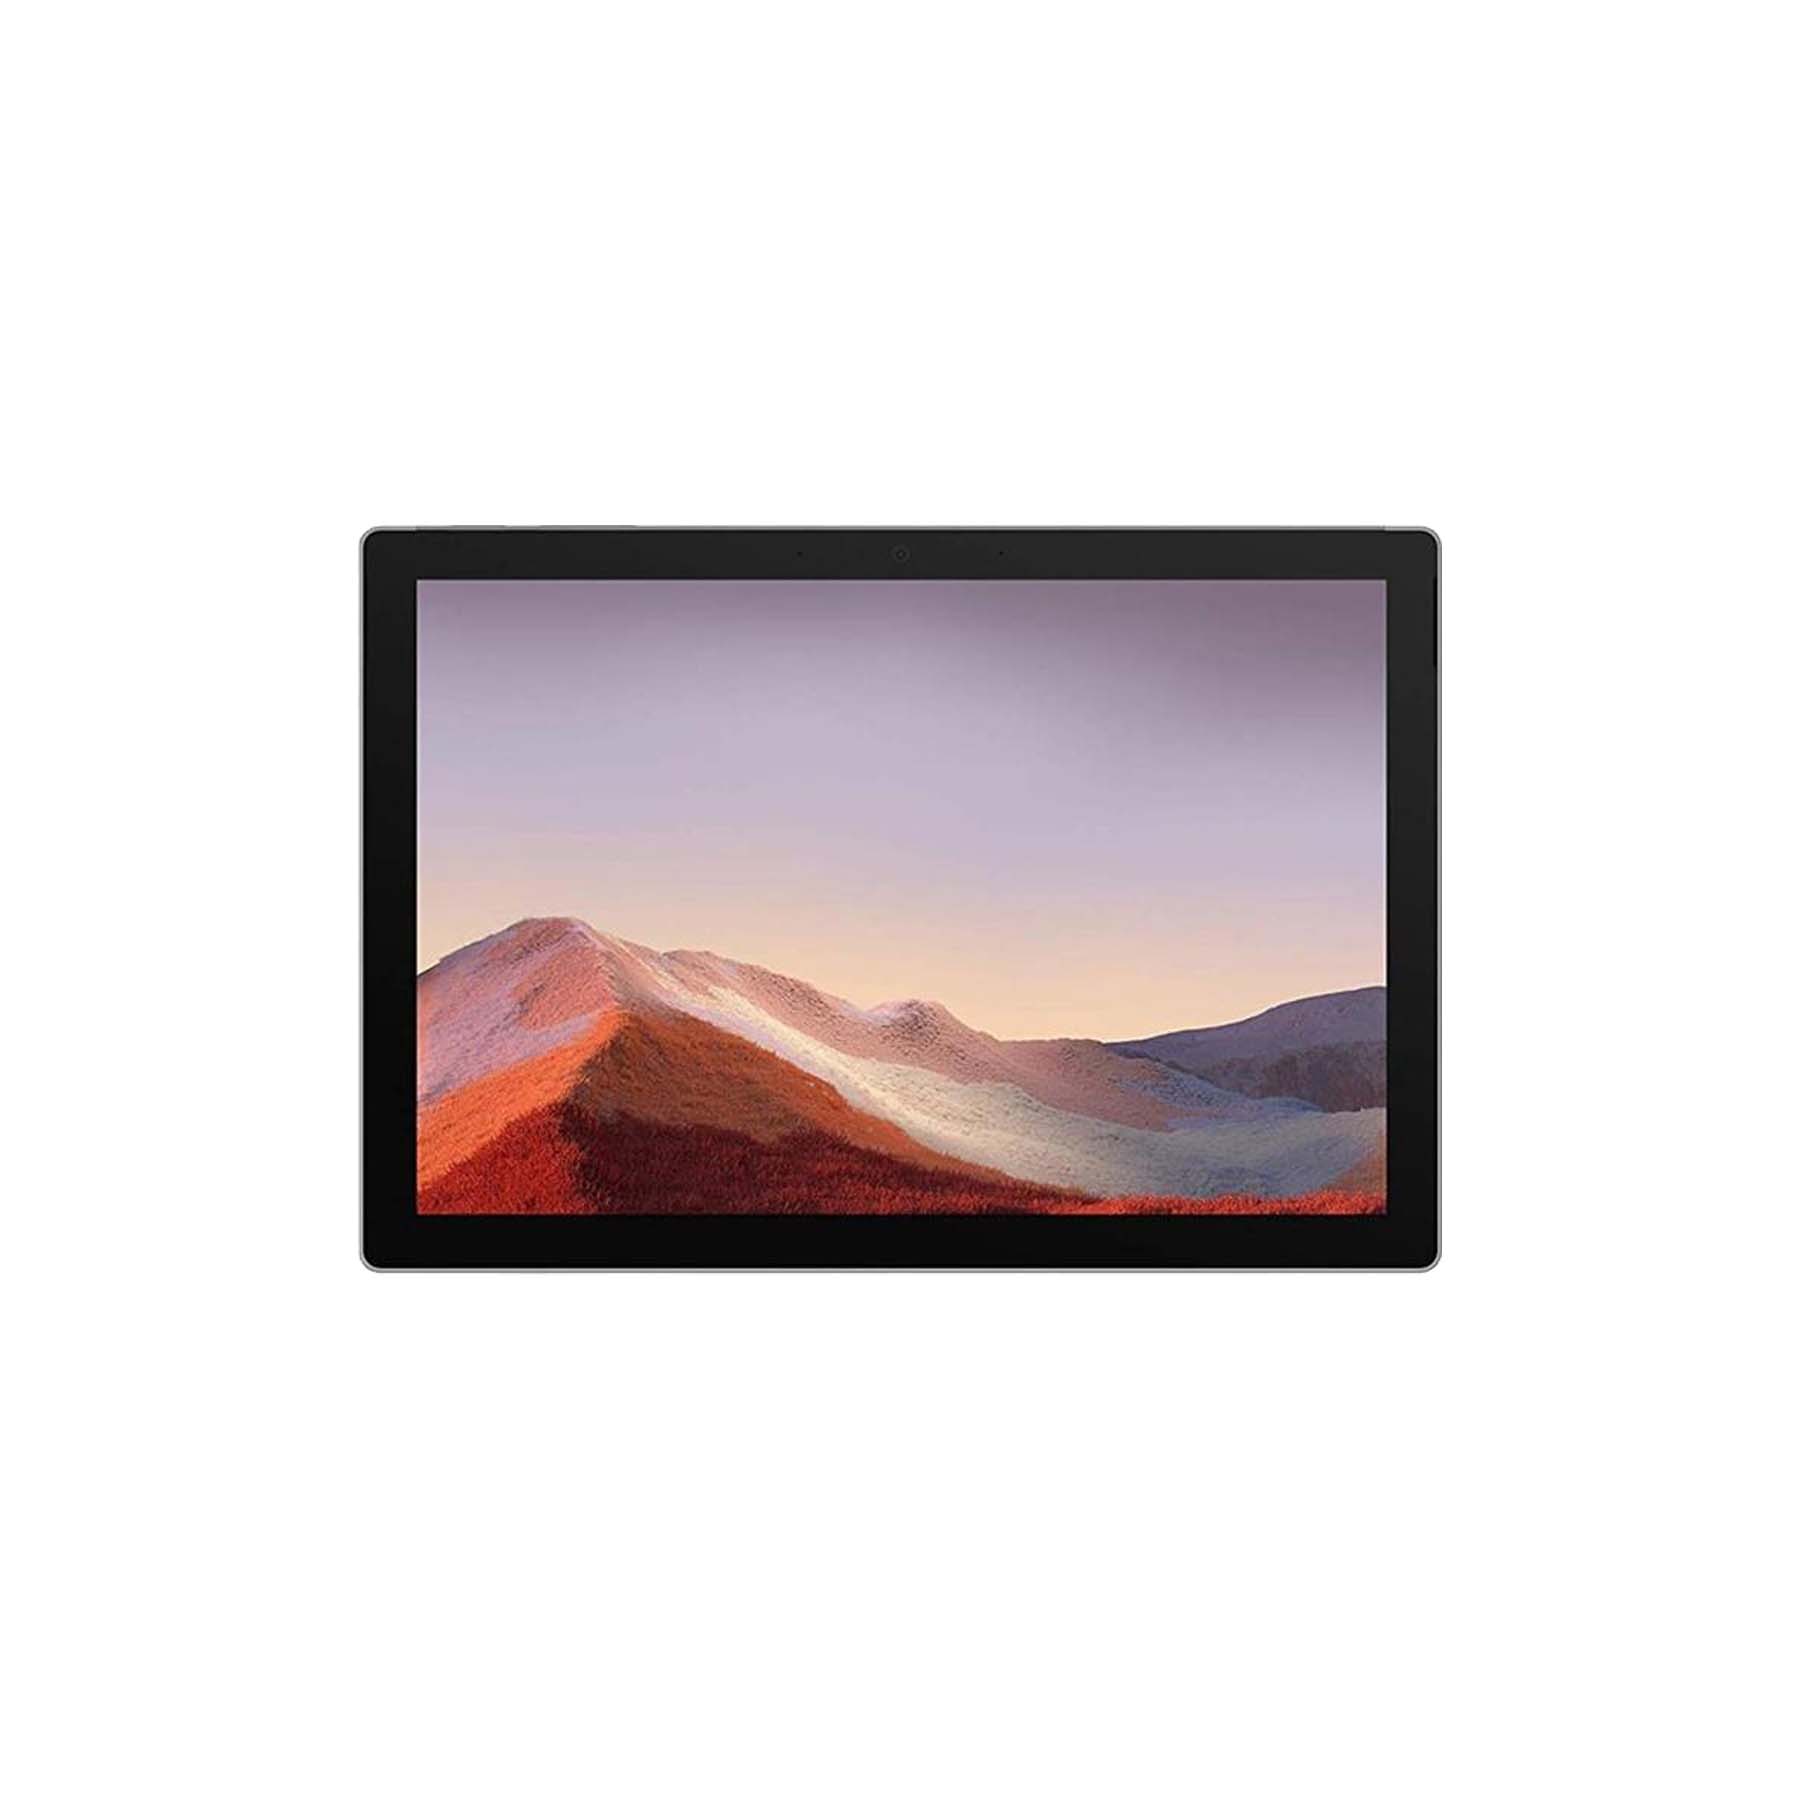 تبلت مایکروسافت مدل Surface Pro 7 Plus LTE ظرفیت 128 گیگابایت